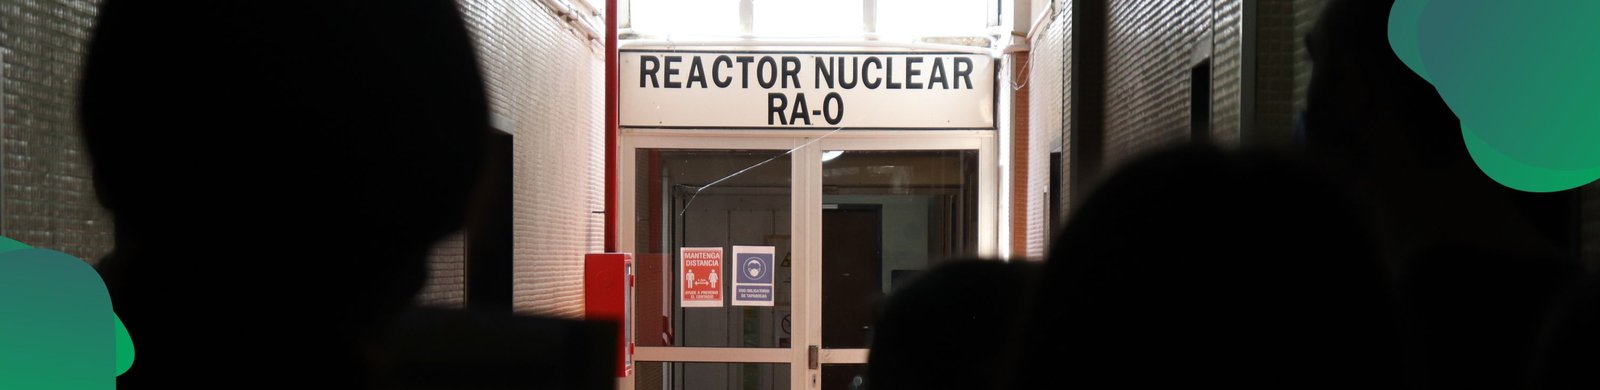 ¡Estamos renovando nuestro reactor nuclear!.jpg